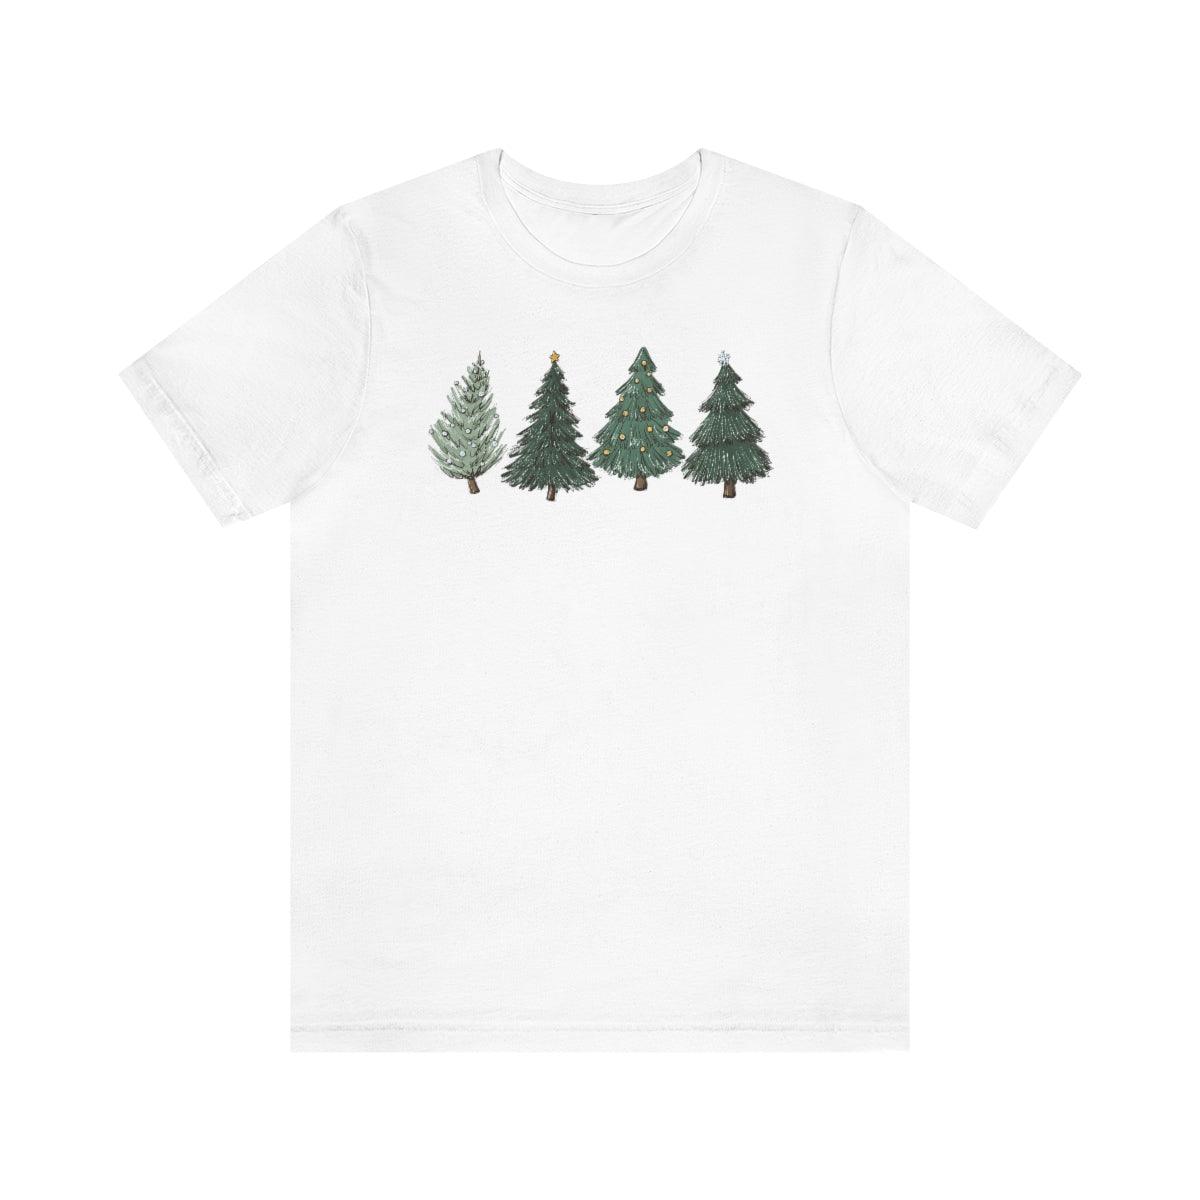 Christmas Trees Holiday Christmas Shirt Short Sleeve Tee